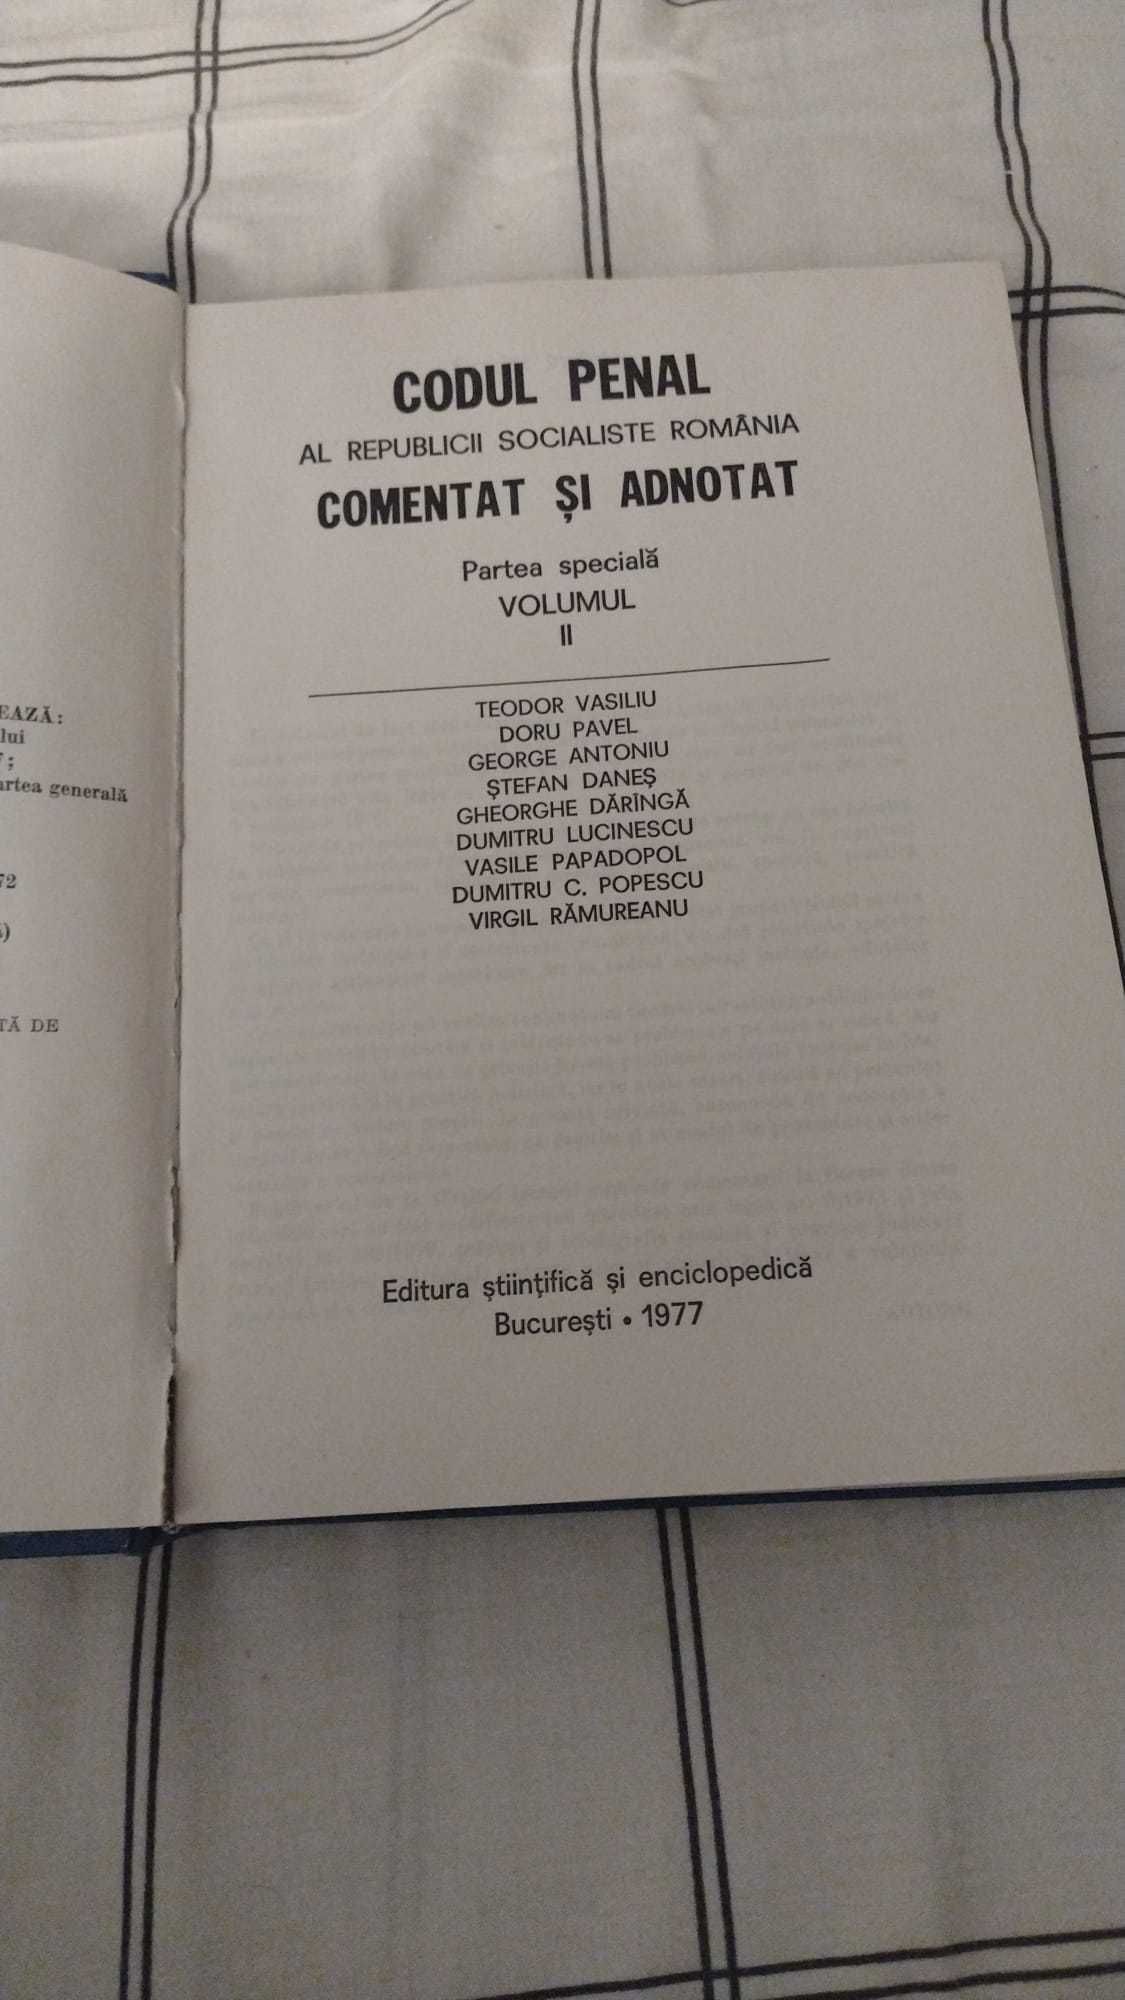 CODUL PENAL - Adnotat - Vol. I - II Partea Speciala - Teodor Vasiliu